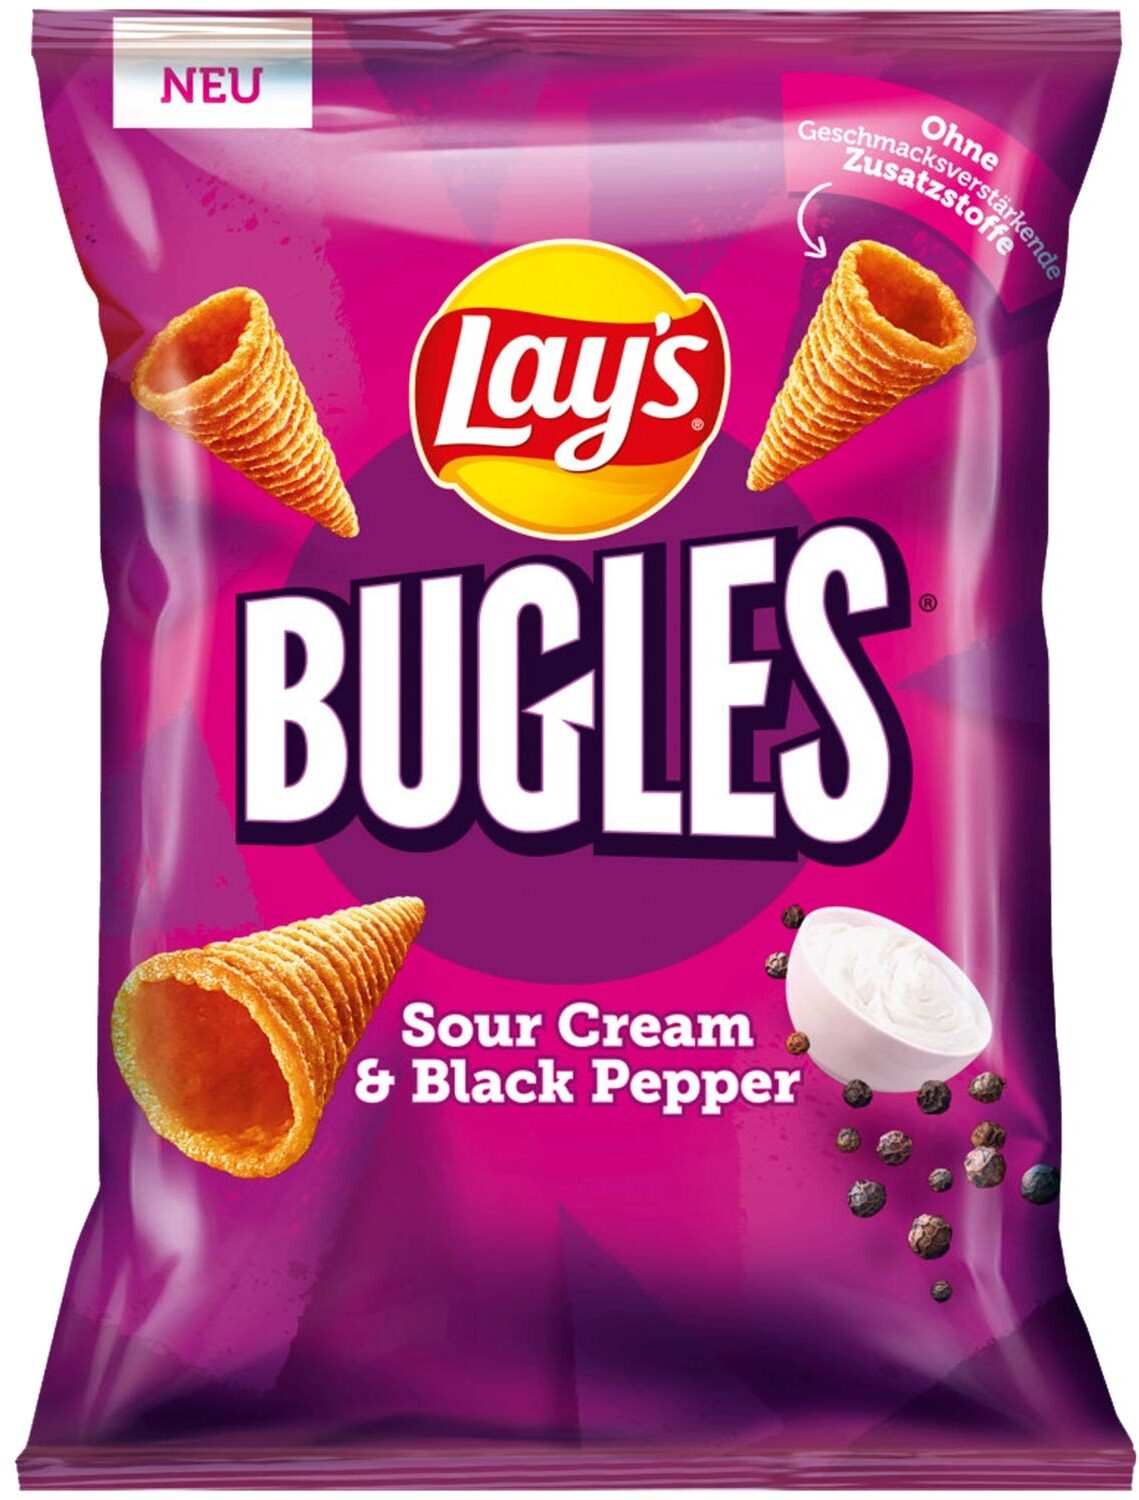 Bugles sour cream & black pepper - Produkt